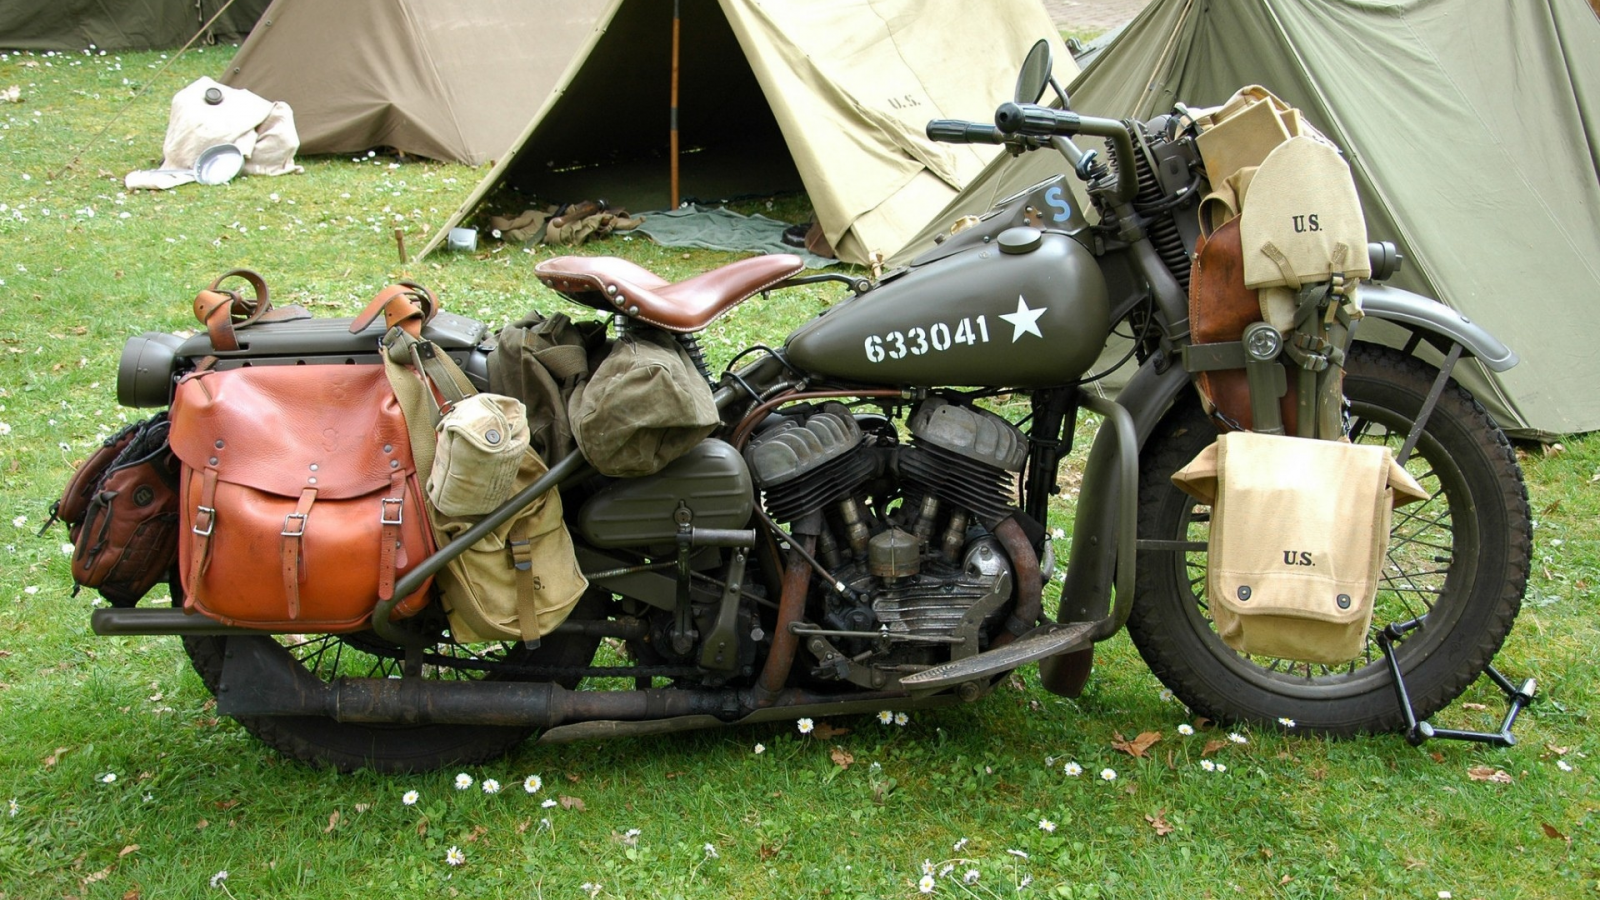 Поляна, трава, палатки, мото, Harley, ретро, армия, США